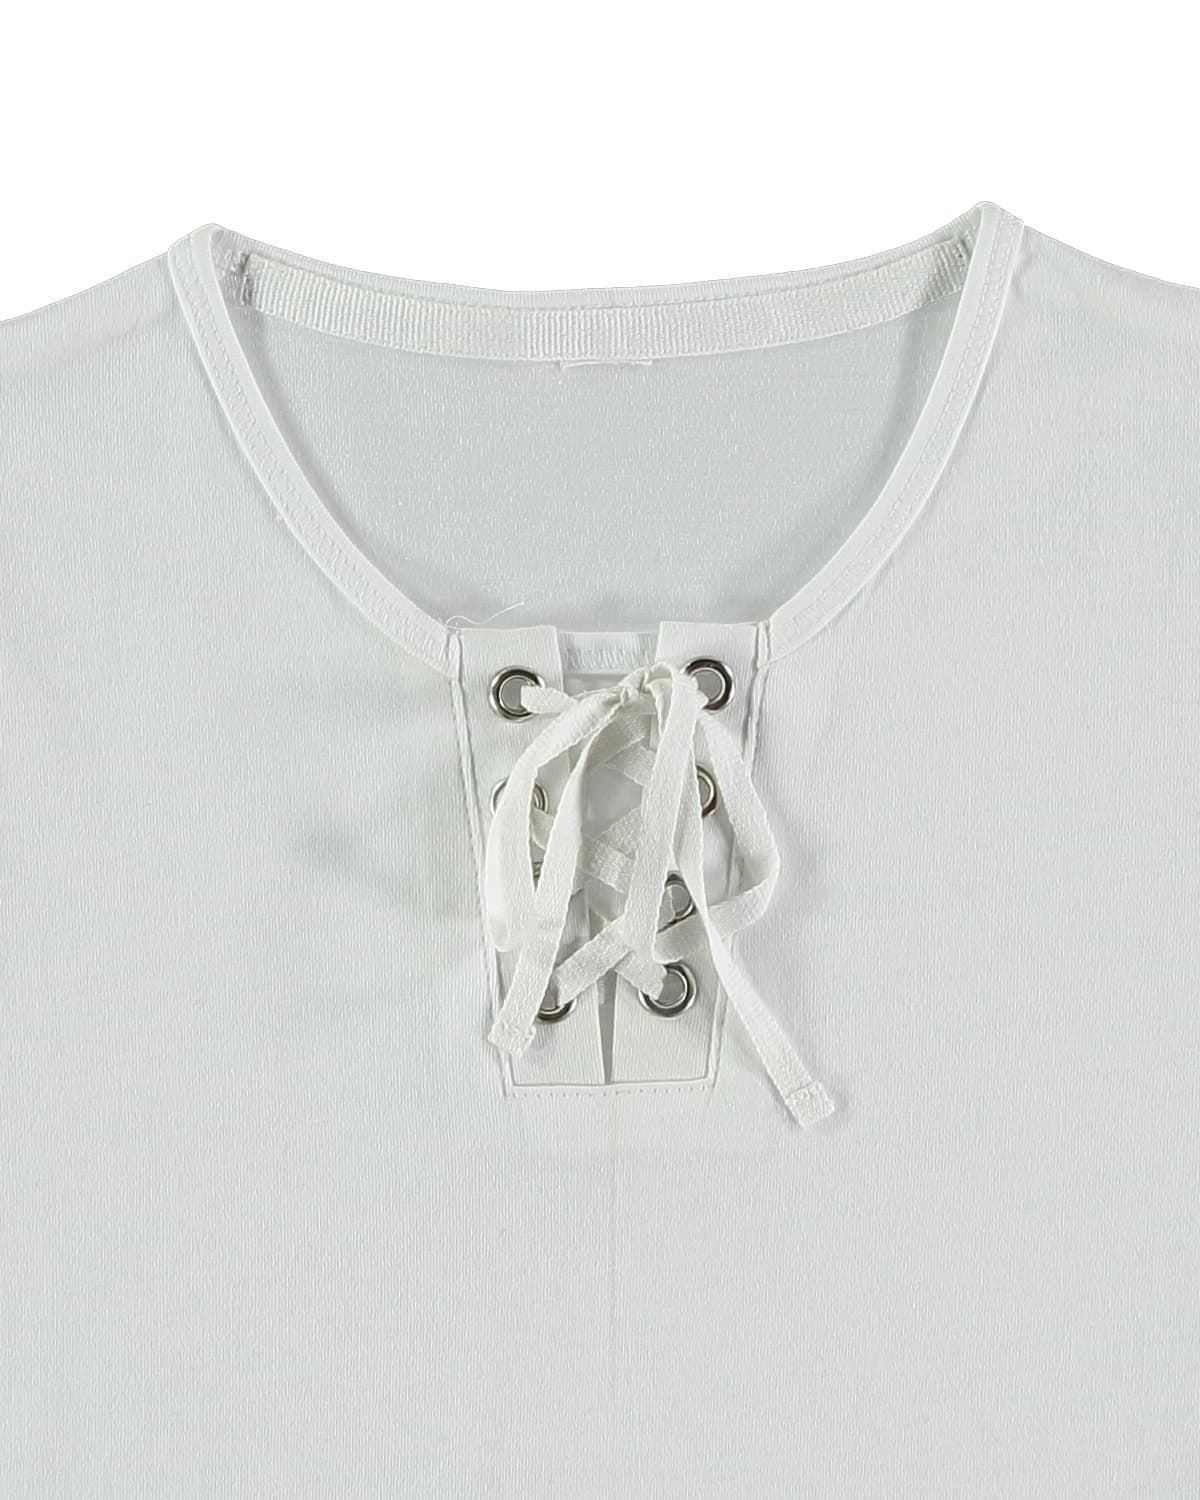 Camiseta de manga corta con ojales y cordón. - Imagen 2